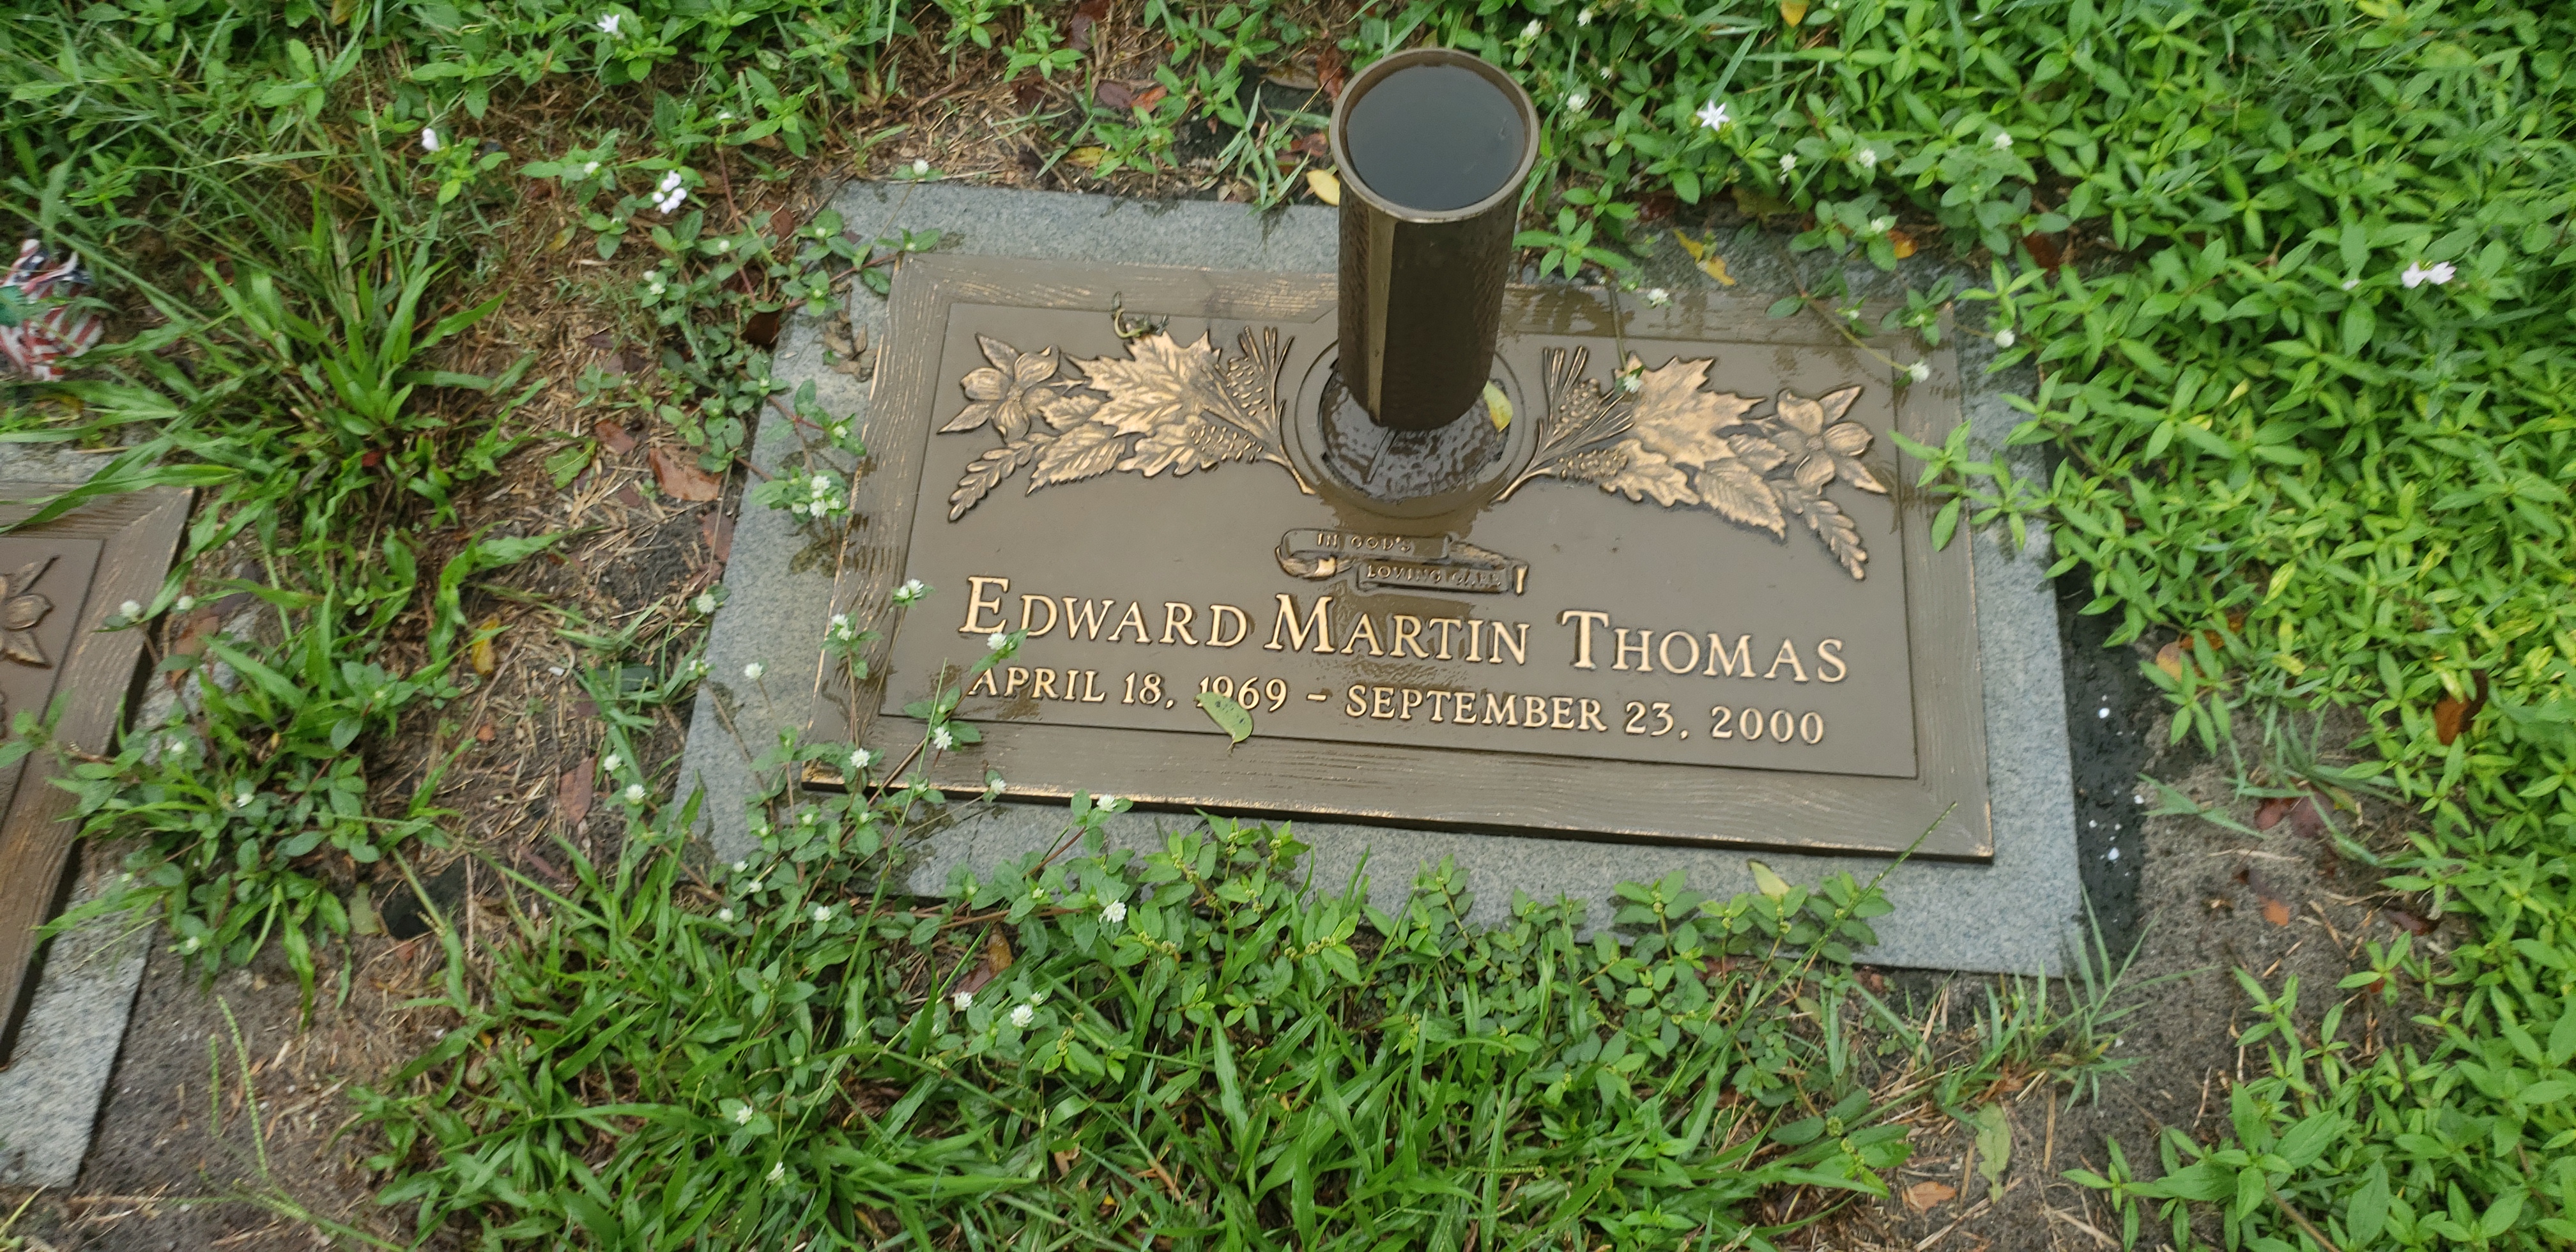 Edward Martin Thomas